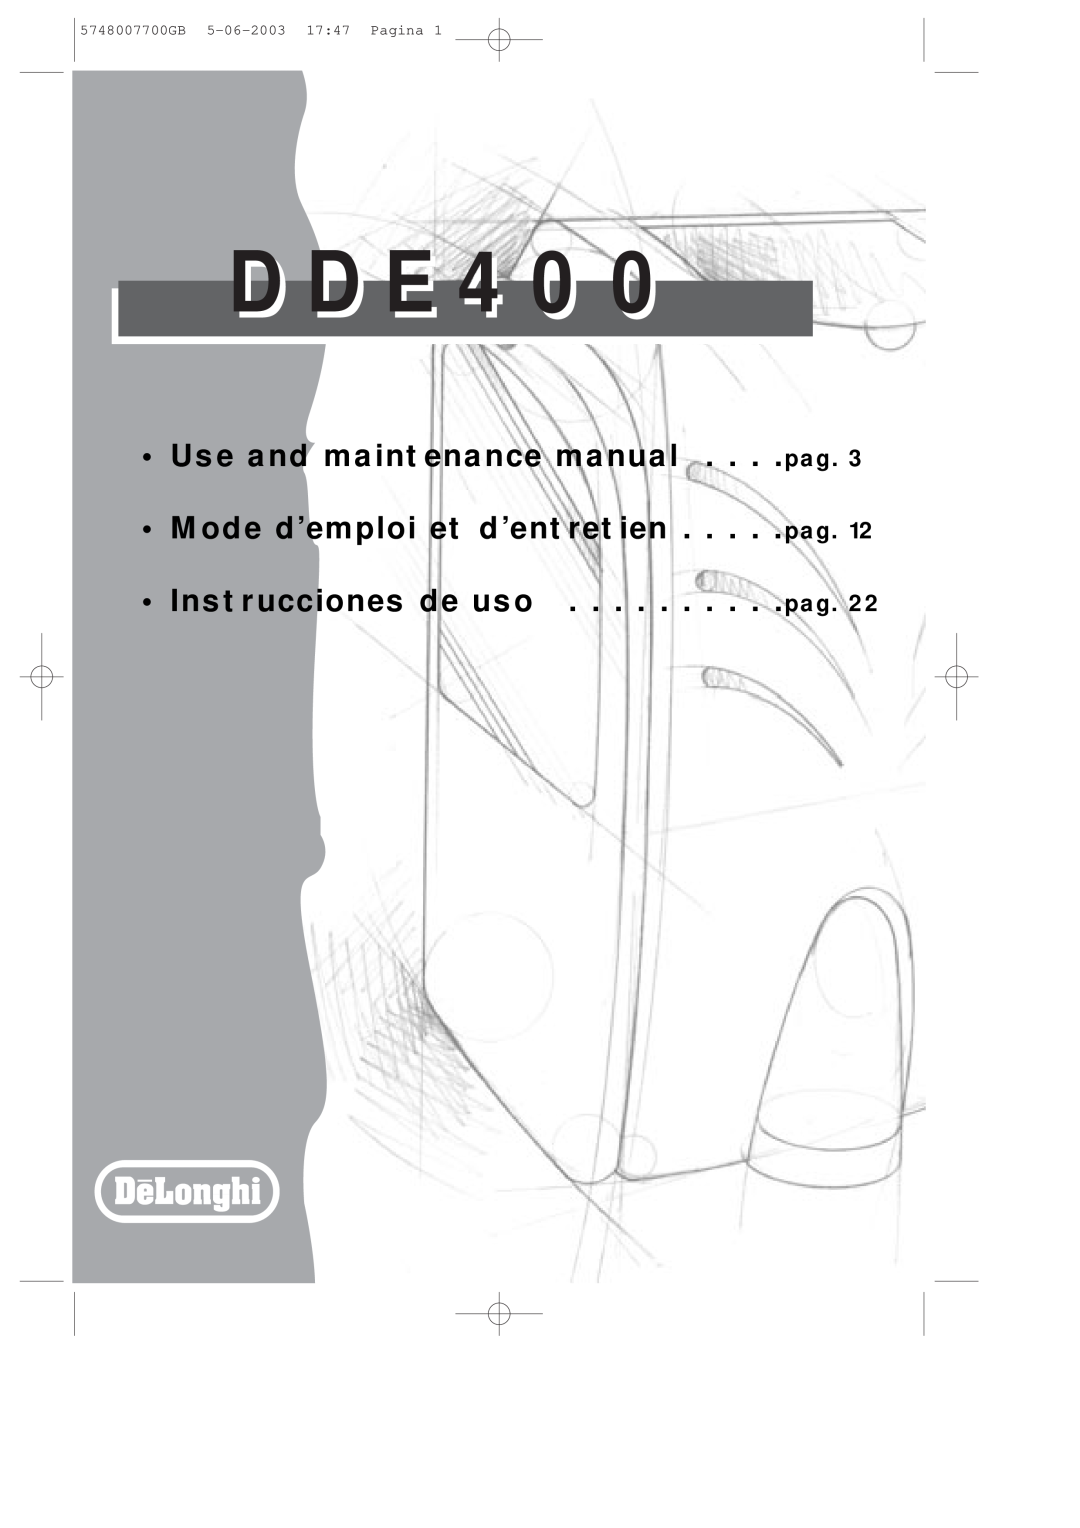 DeLonghi DDE400 manual D D E, Use and maintenance manual . . . .pag, Mode d’emploi et d’entretien . . . . .pag 